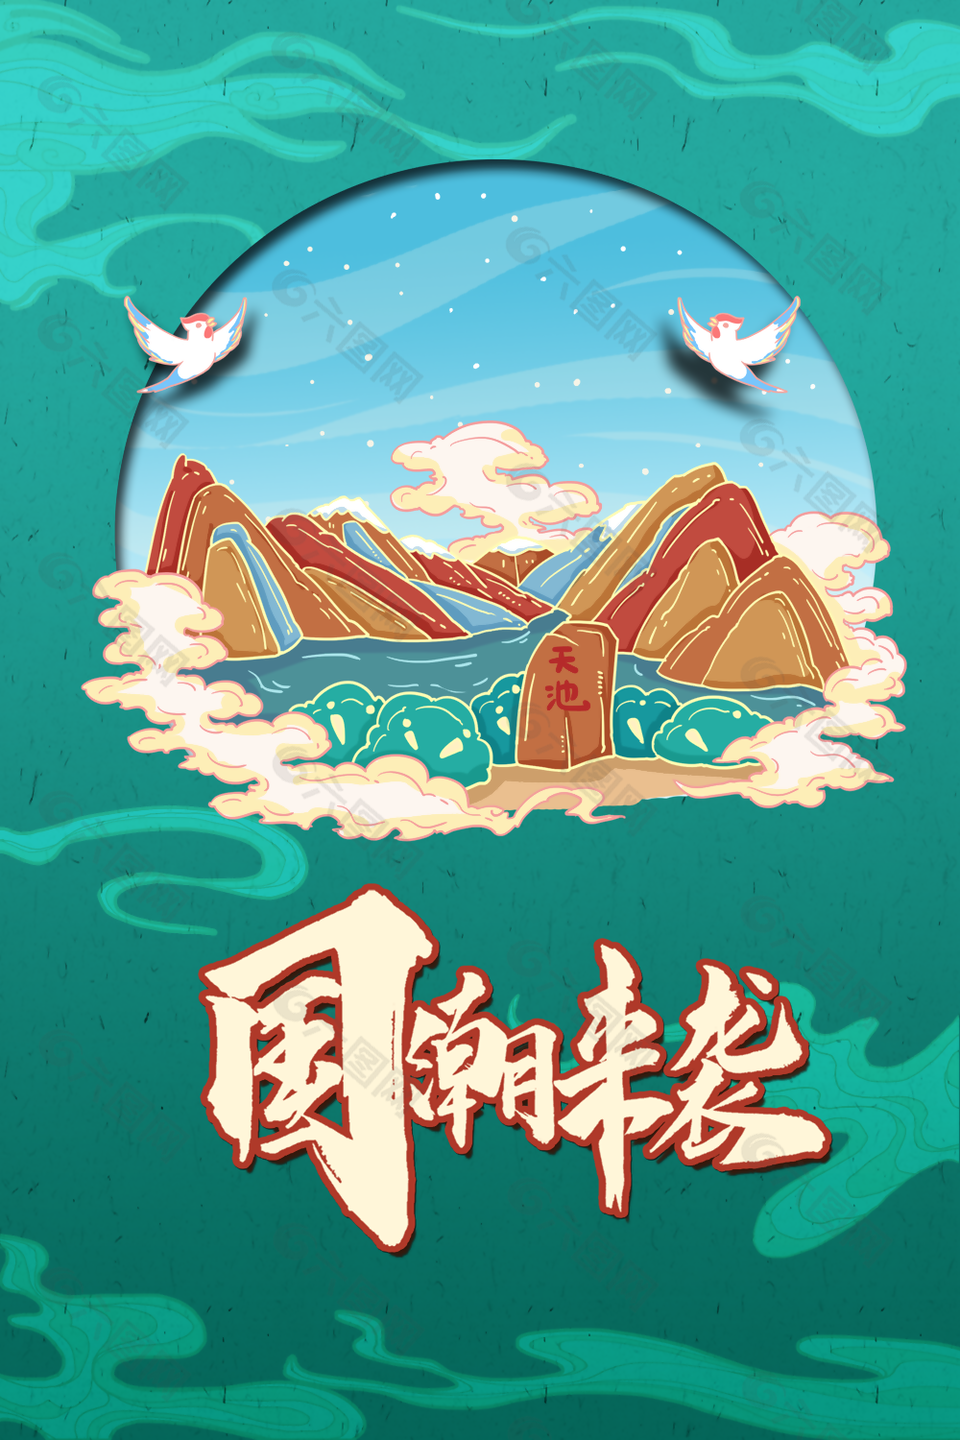 创意古典中国风手绘建筑古迹插画素材设计